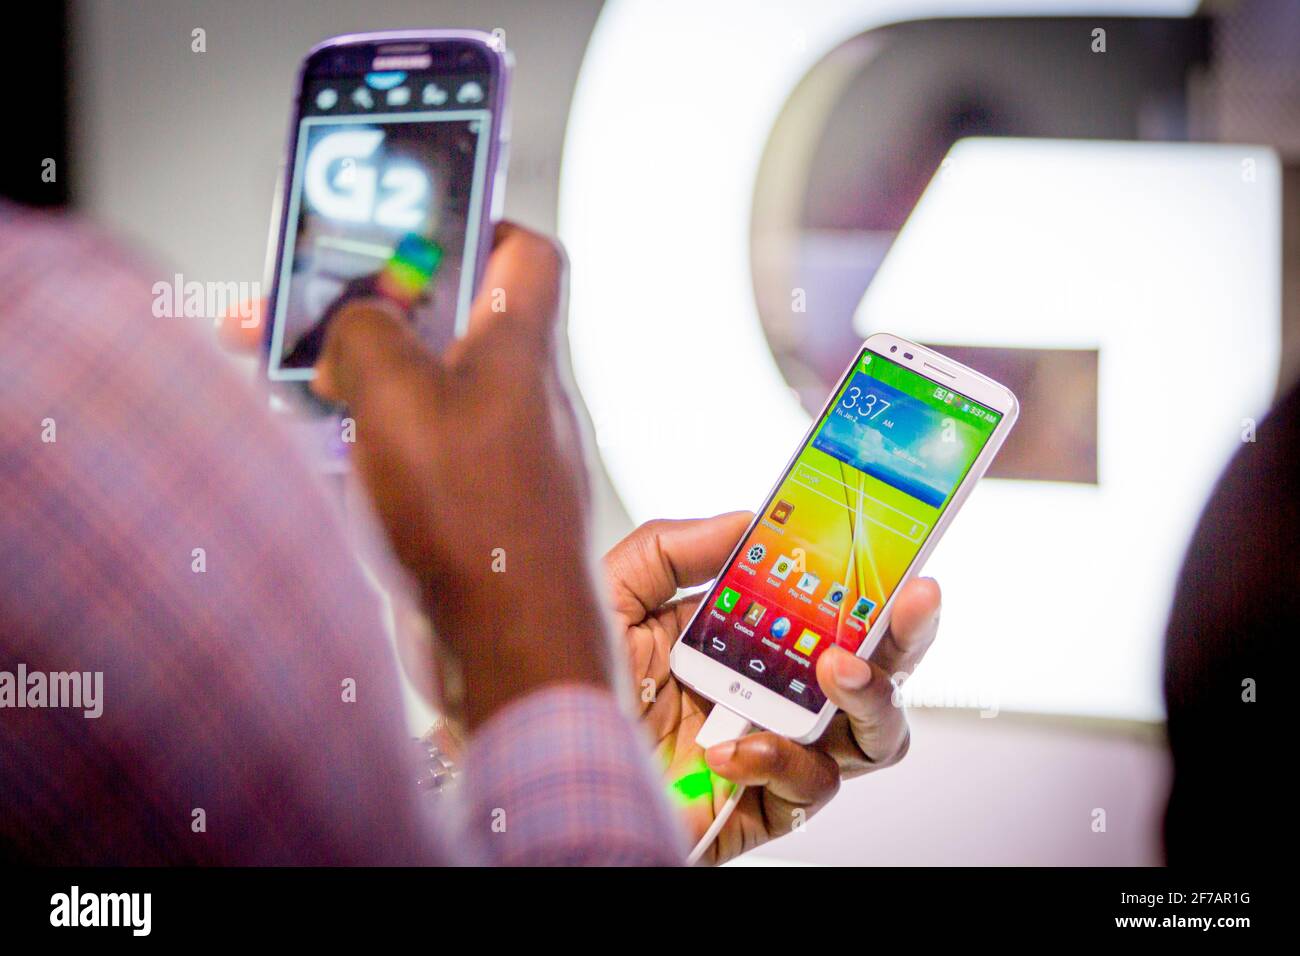 I giornalisti hanno testato lo smartphone G2 in occasione di un evento di lancio al Lincoln Jazz di New York il 7 agosto 2013. LG ha annunciato in un comunicato stampa il 5 aprile 2021 che chiuderanno il business della telefonia mobile in tutto il mondo. Foto Stock